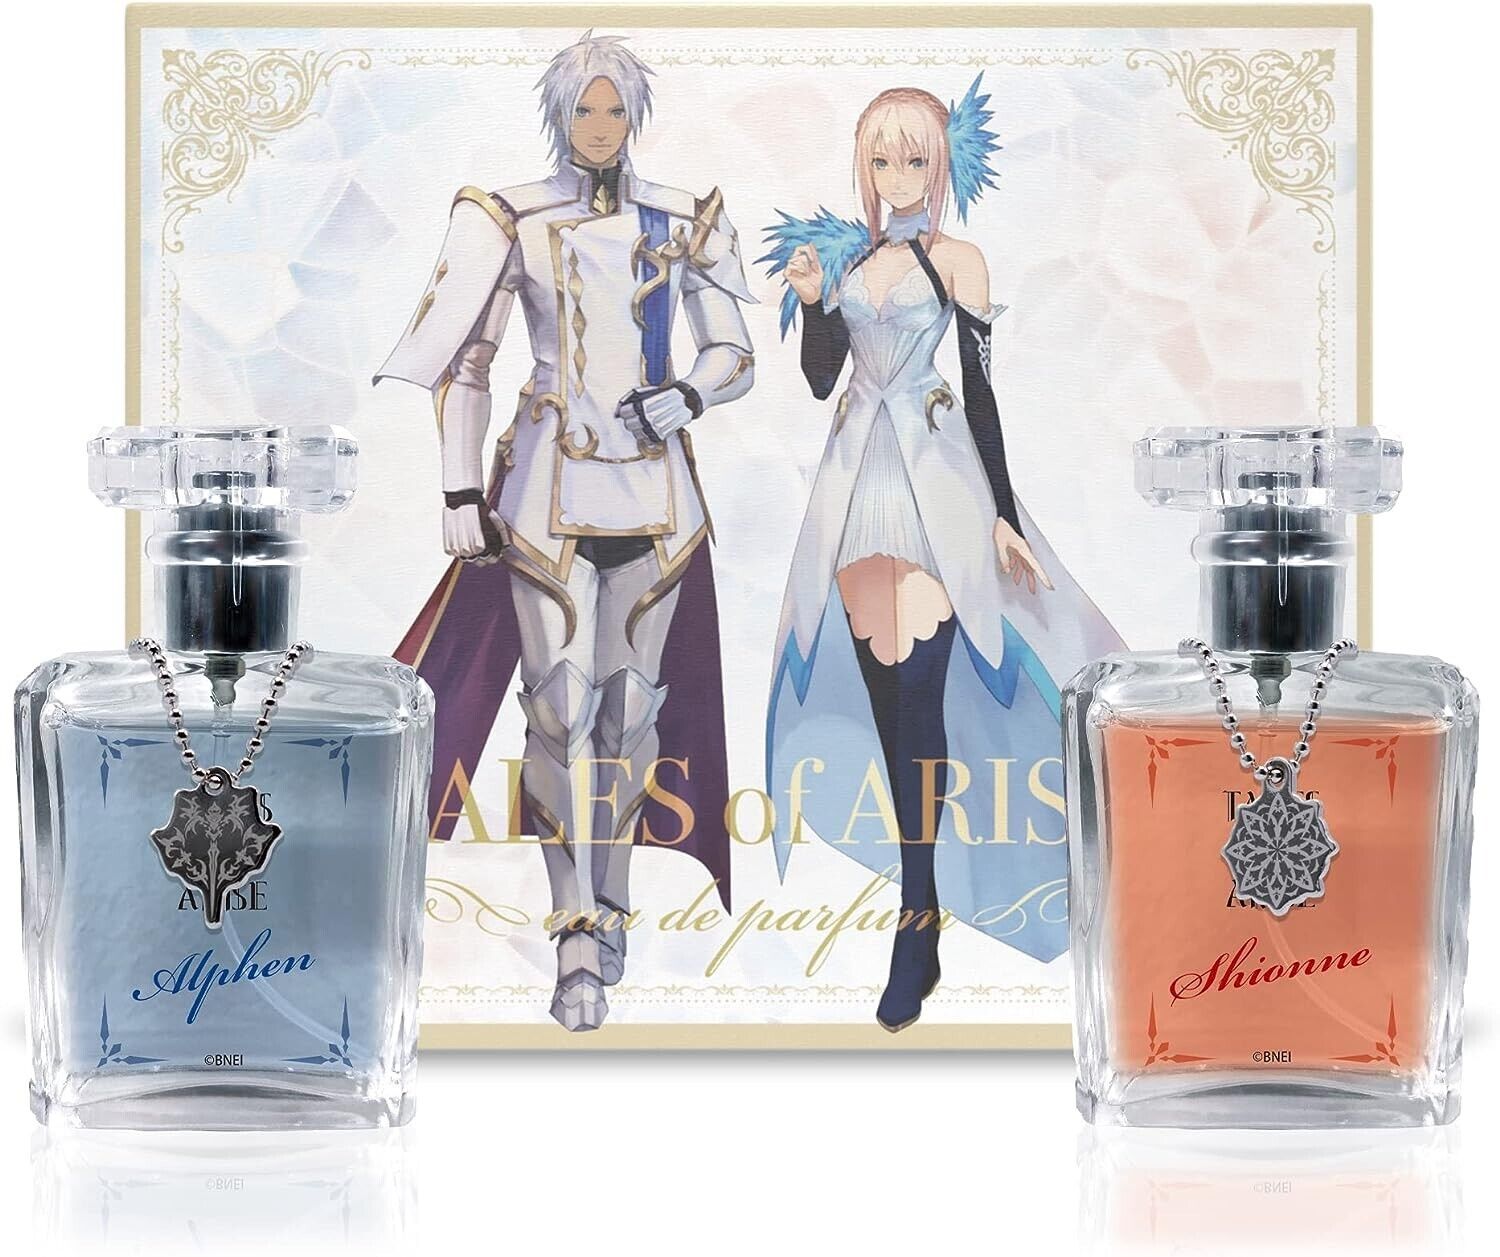 TALES of ARISE Alphen & Shionn Fragrance Eau De Parfum 50ml×2 Limited JAPAN RPG